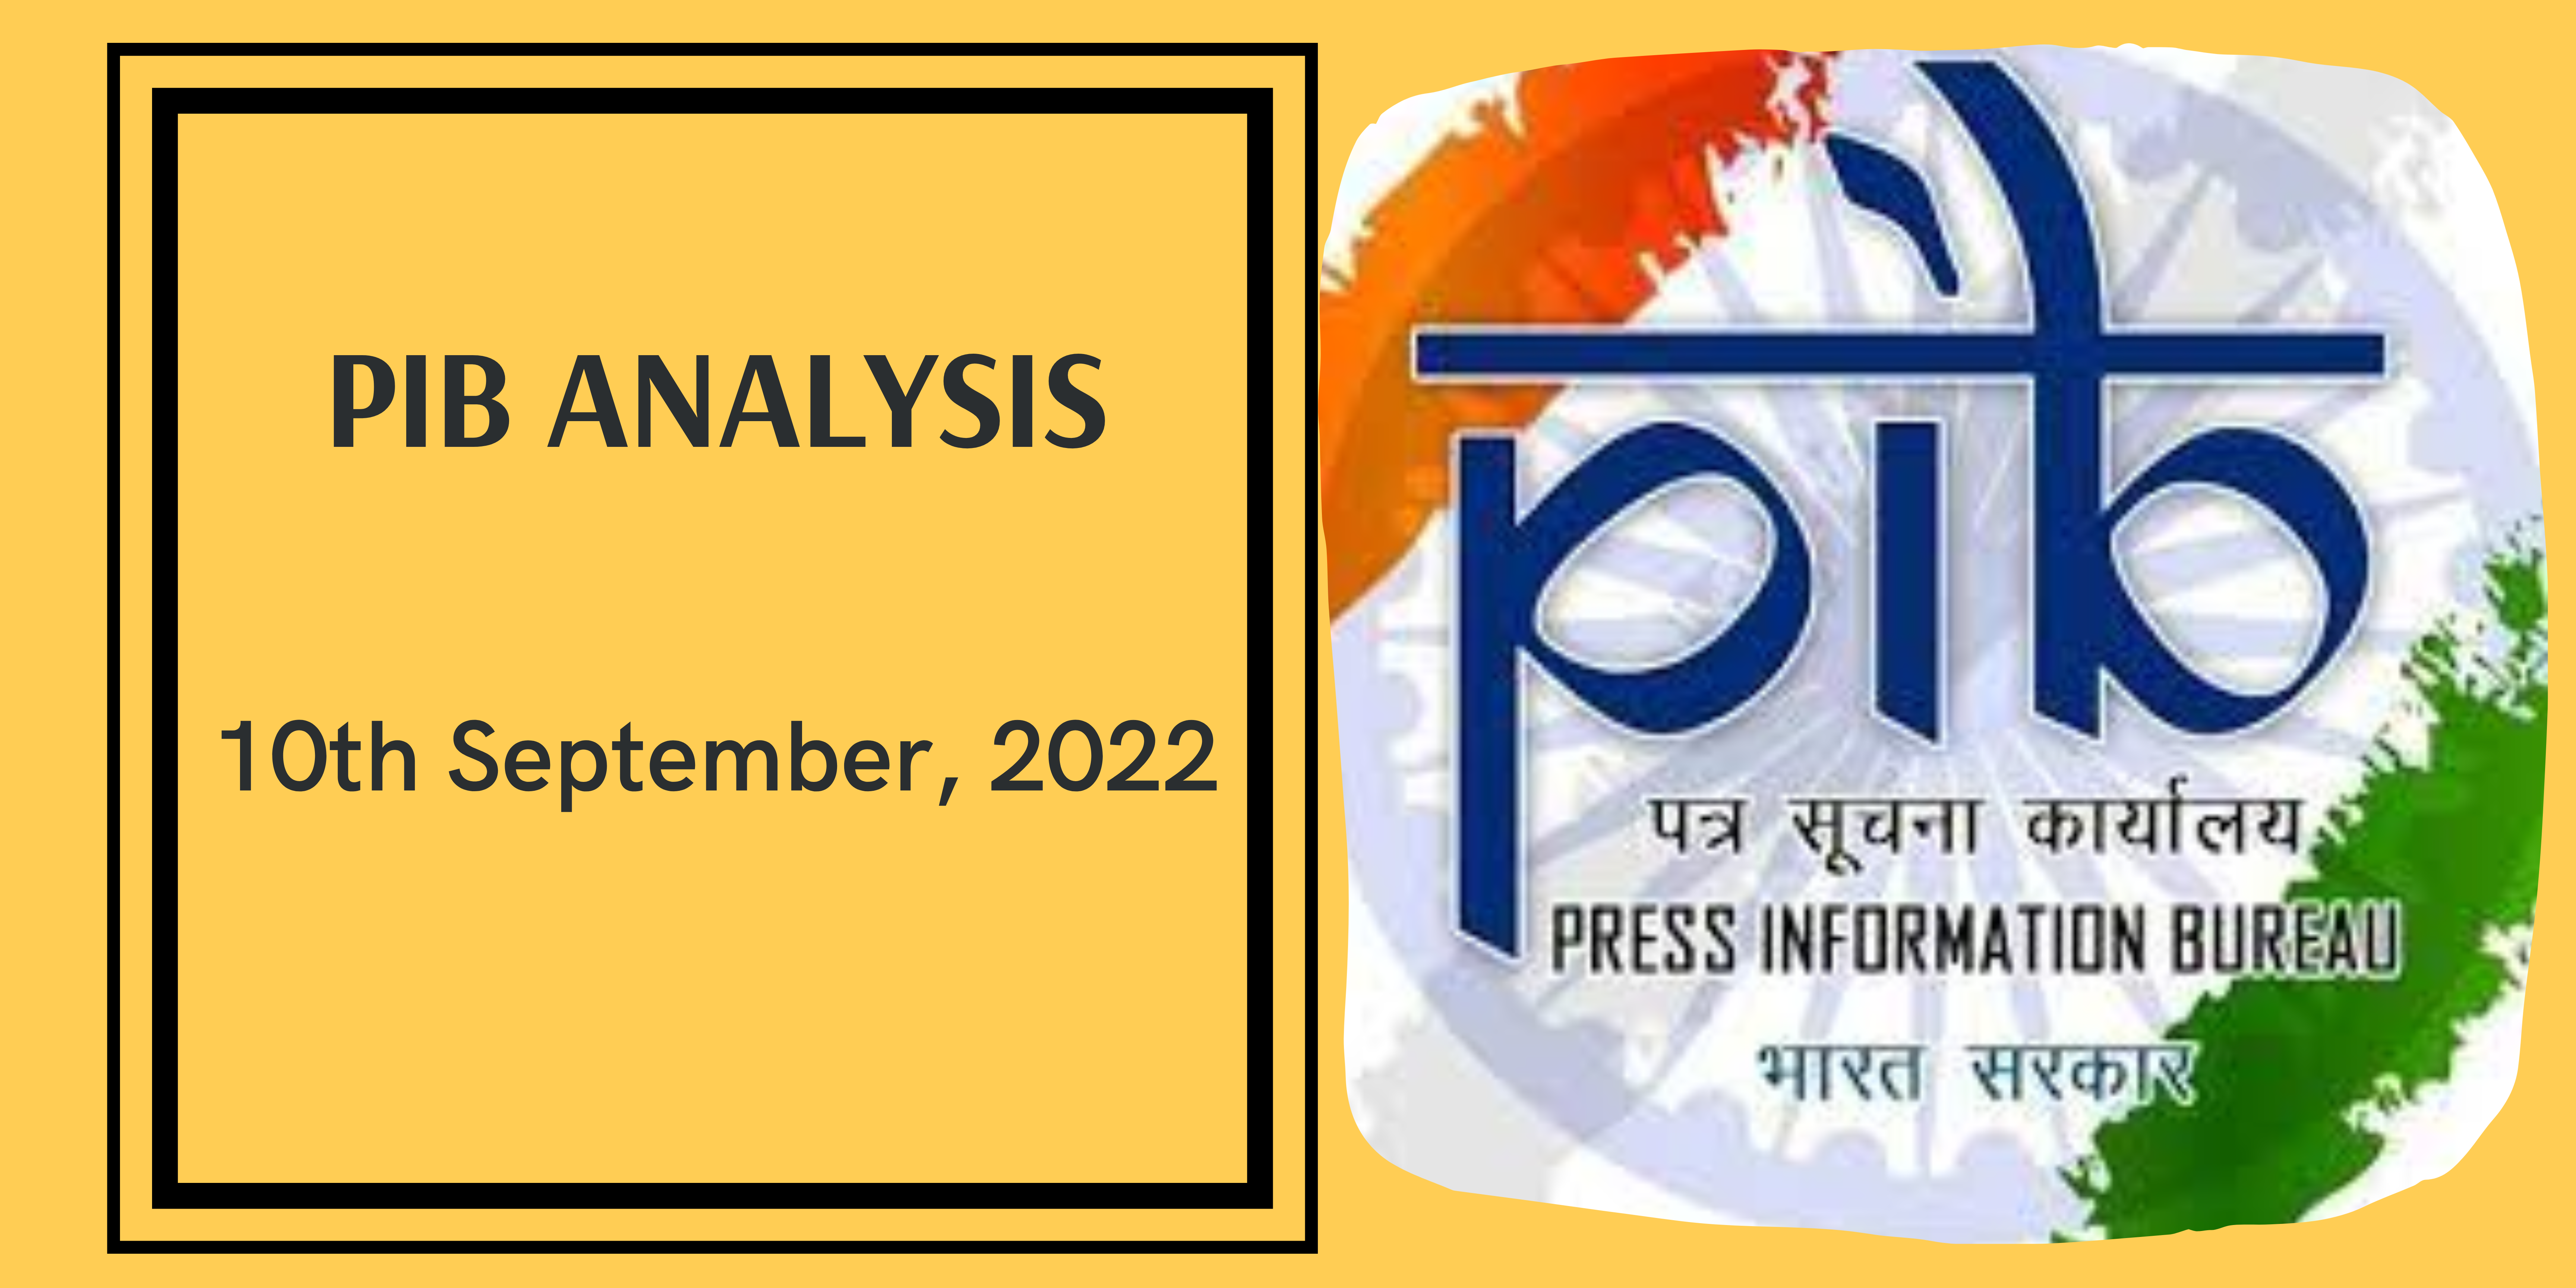 PIB Analysis - 10th September, 2022